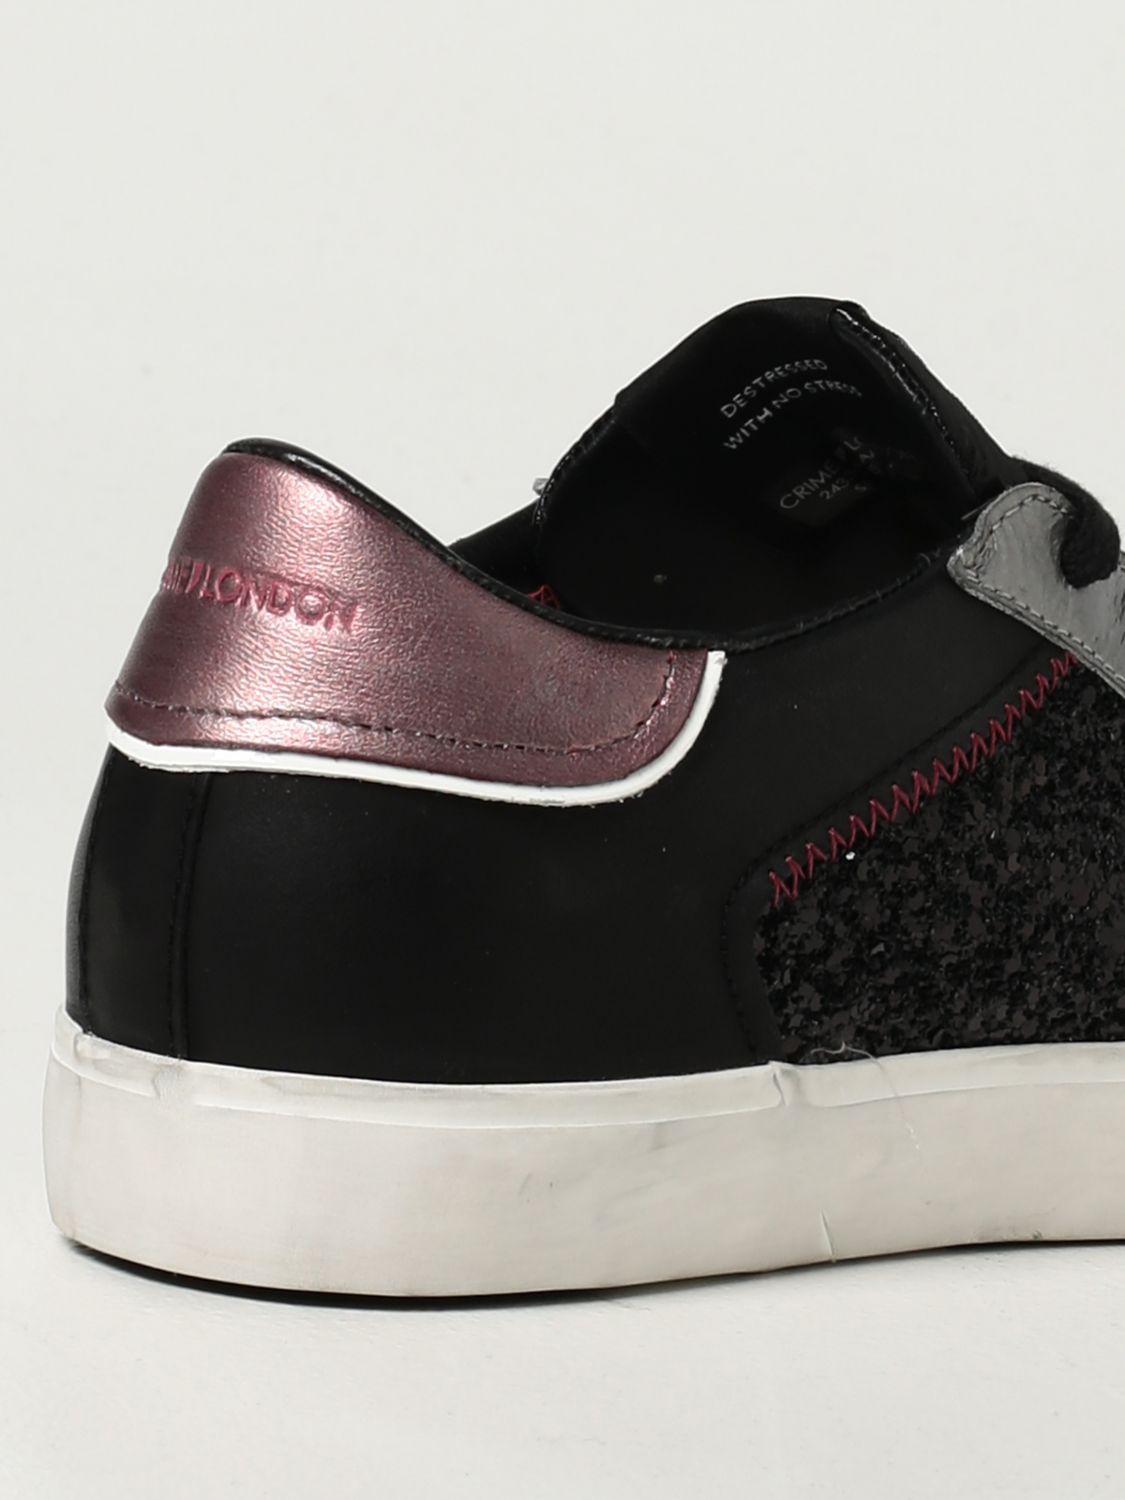 B6624 sneaker donna CRIME LONDON scarpa grigio scuro glitter shoe slip on woman 